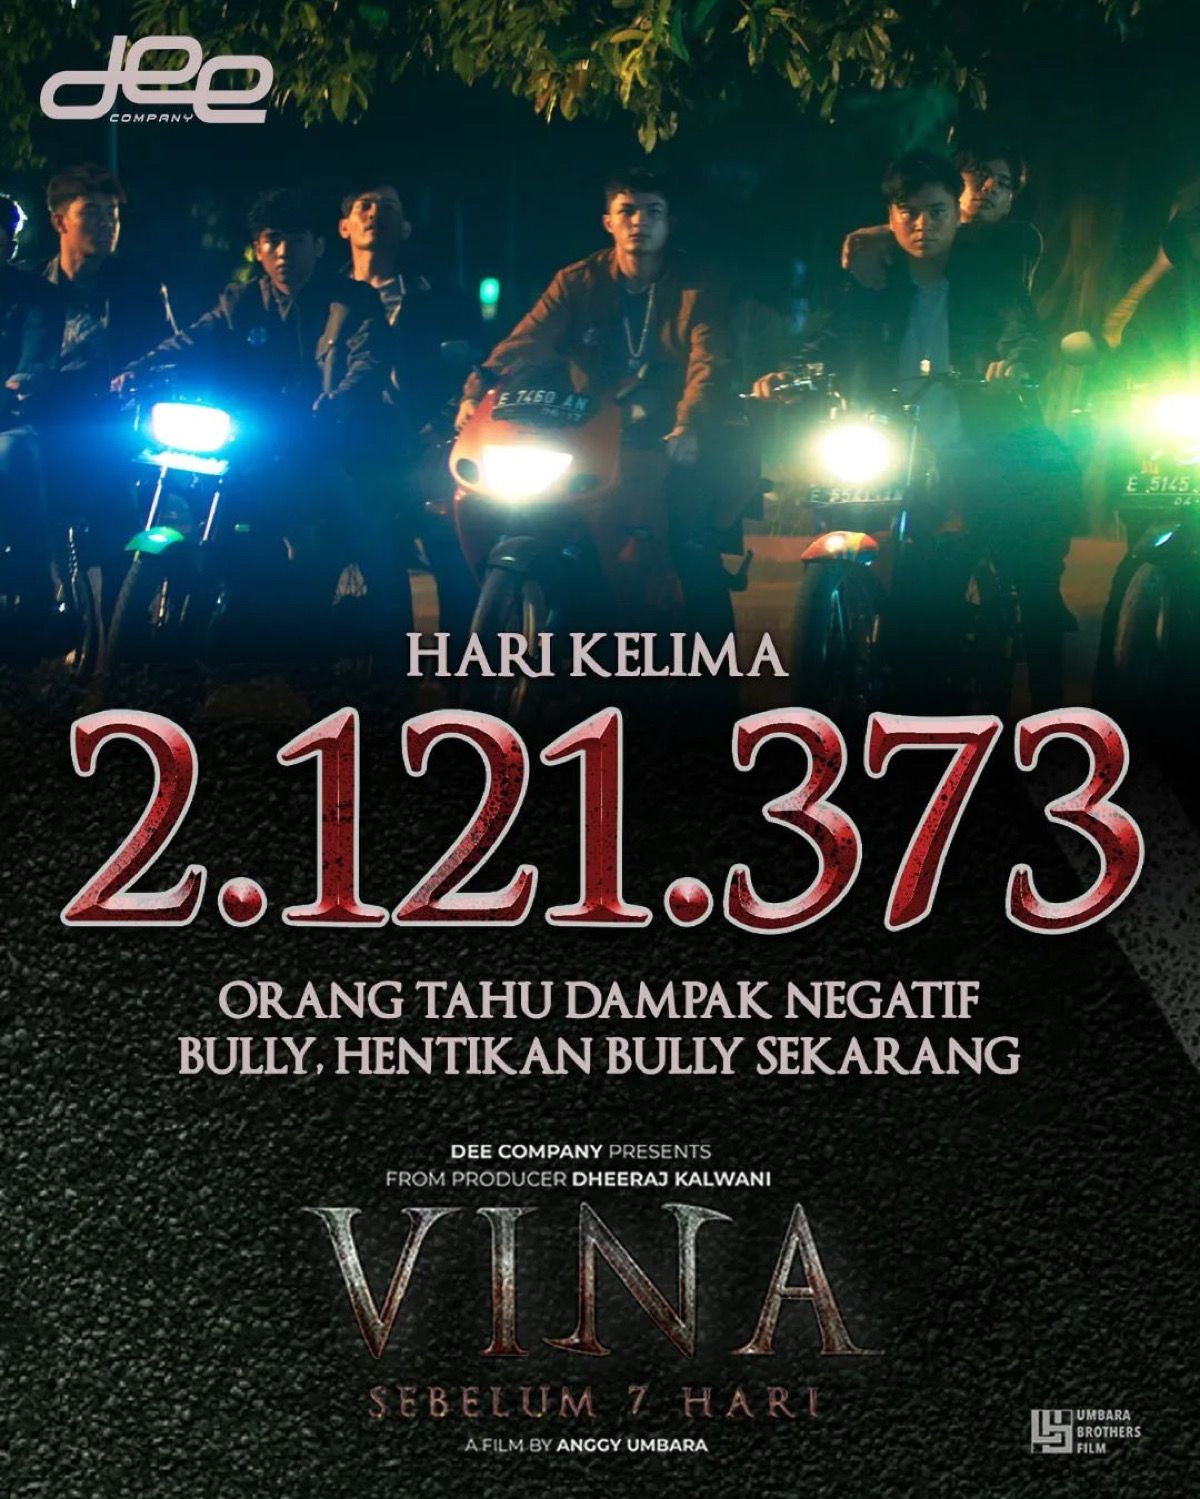 Jumlah perolehan penonton film Vina Sebelum 7 Hari dihari ke-3 penayangan sudah tembus 2 juta penonton